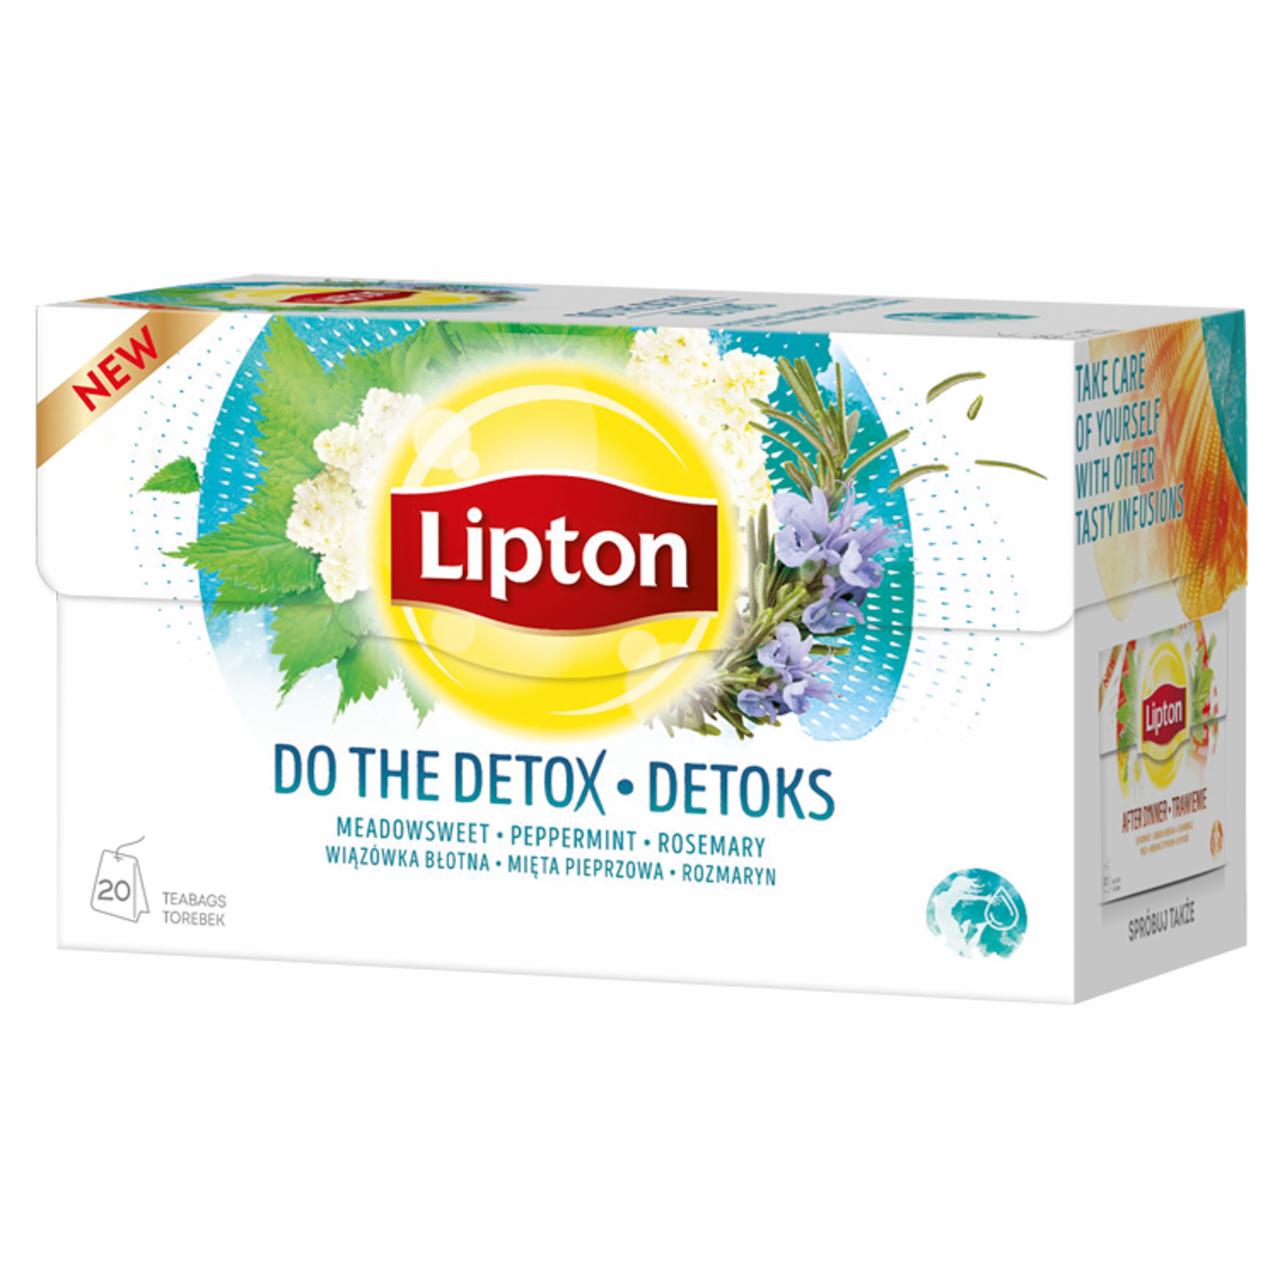 Zdjęcia - Lipton Herbatka ziołowa aromatyzowana detoks 32 g (20 torebek)